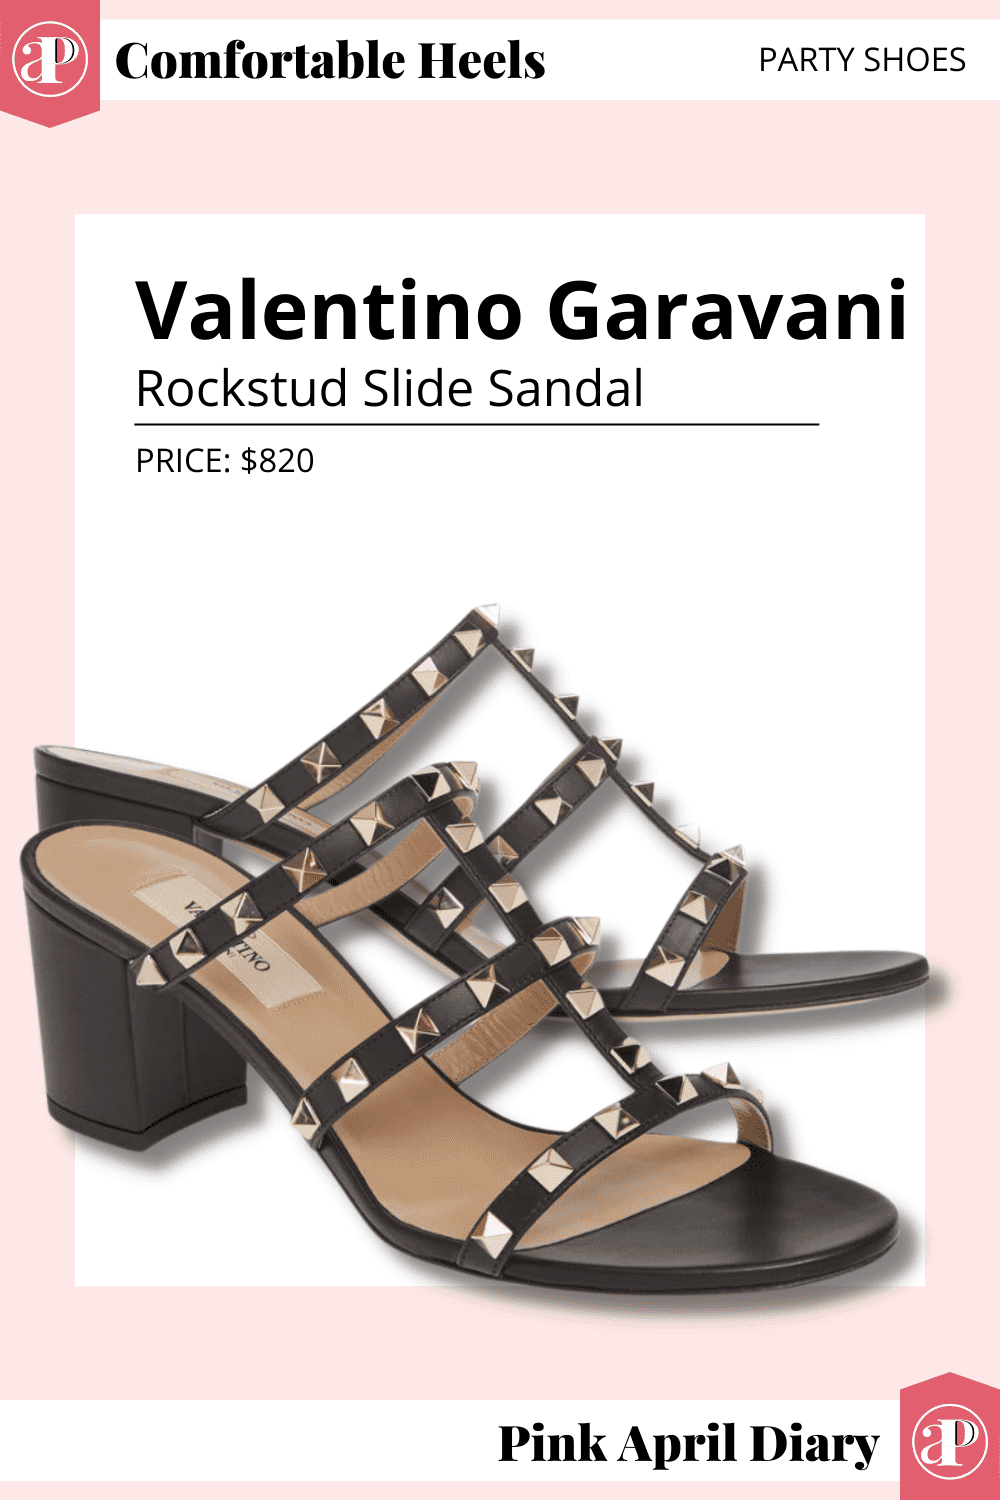 Valentino Garavani Rockstud Slide Sandal